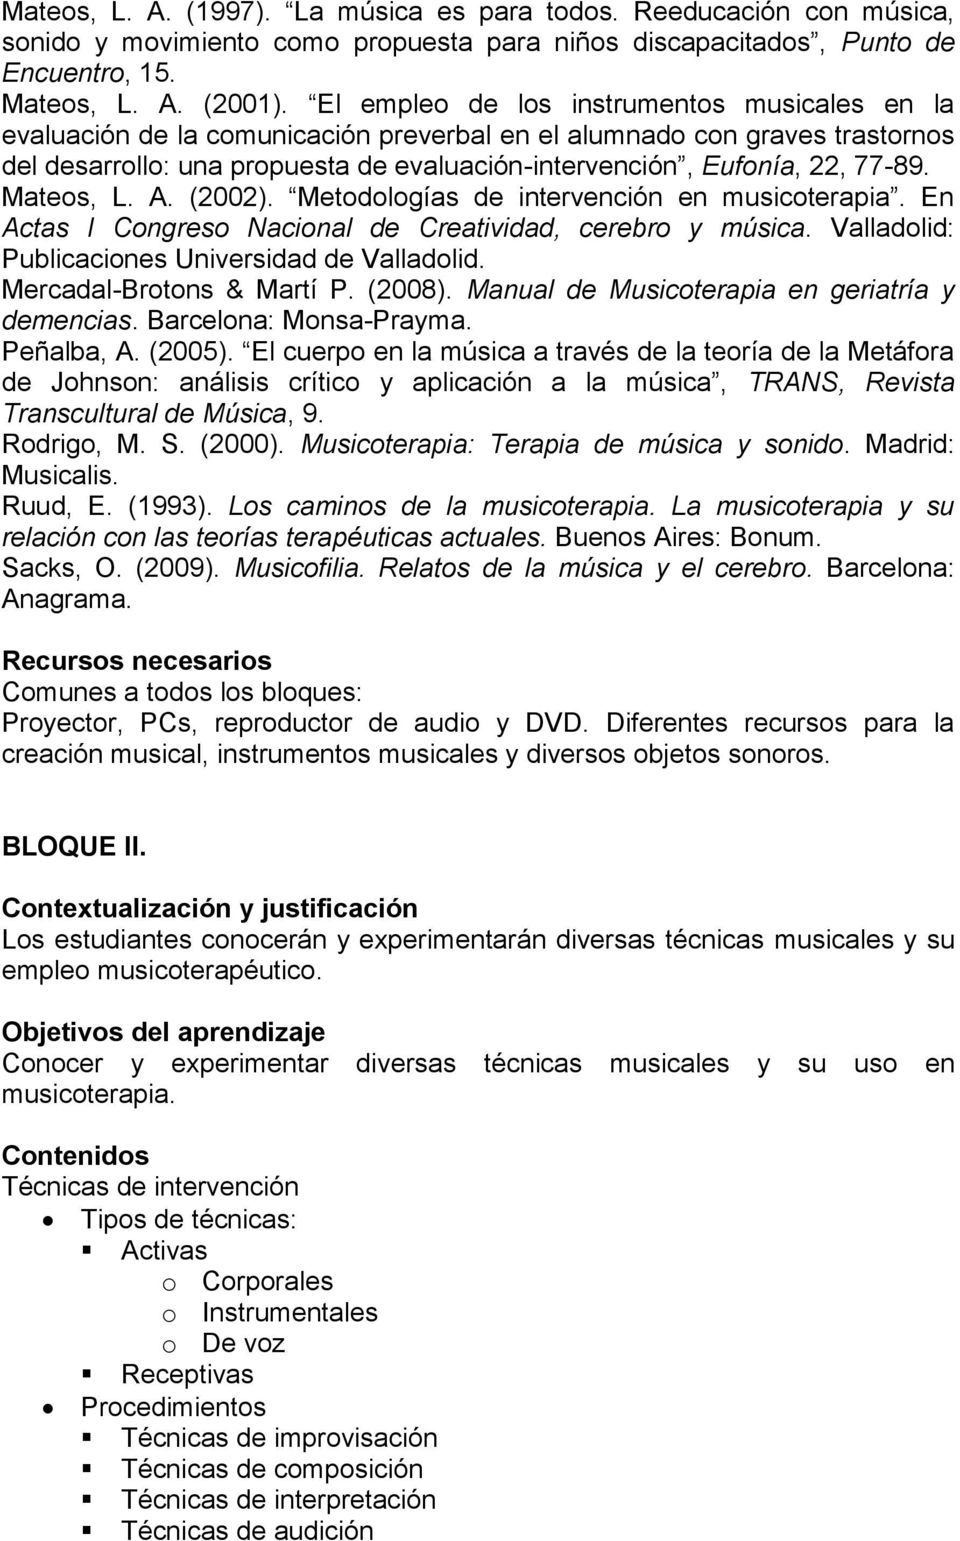 Mateos, L. A. (2002). Metodologías de intervención en musicoterapia. En Actas I Congreso Nacional de Creatividad, cerebro y música. Valladolid: Publicaciones Universidad de Valladolid.